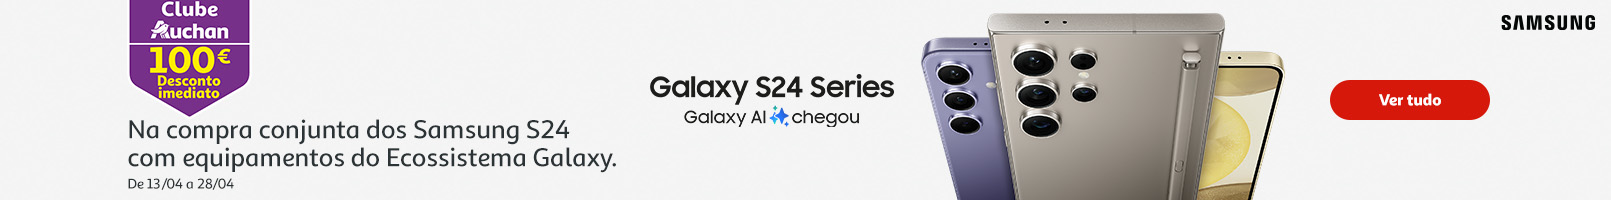 Campanha Samsung Galaxy S24 Series Galaxy 100€ || 13/04 a 28/04 | Auchan